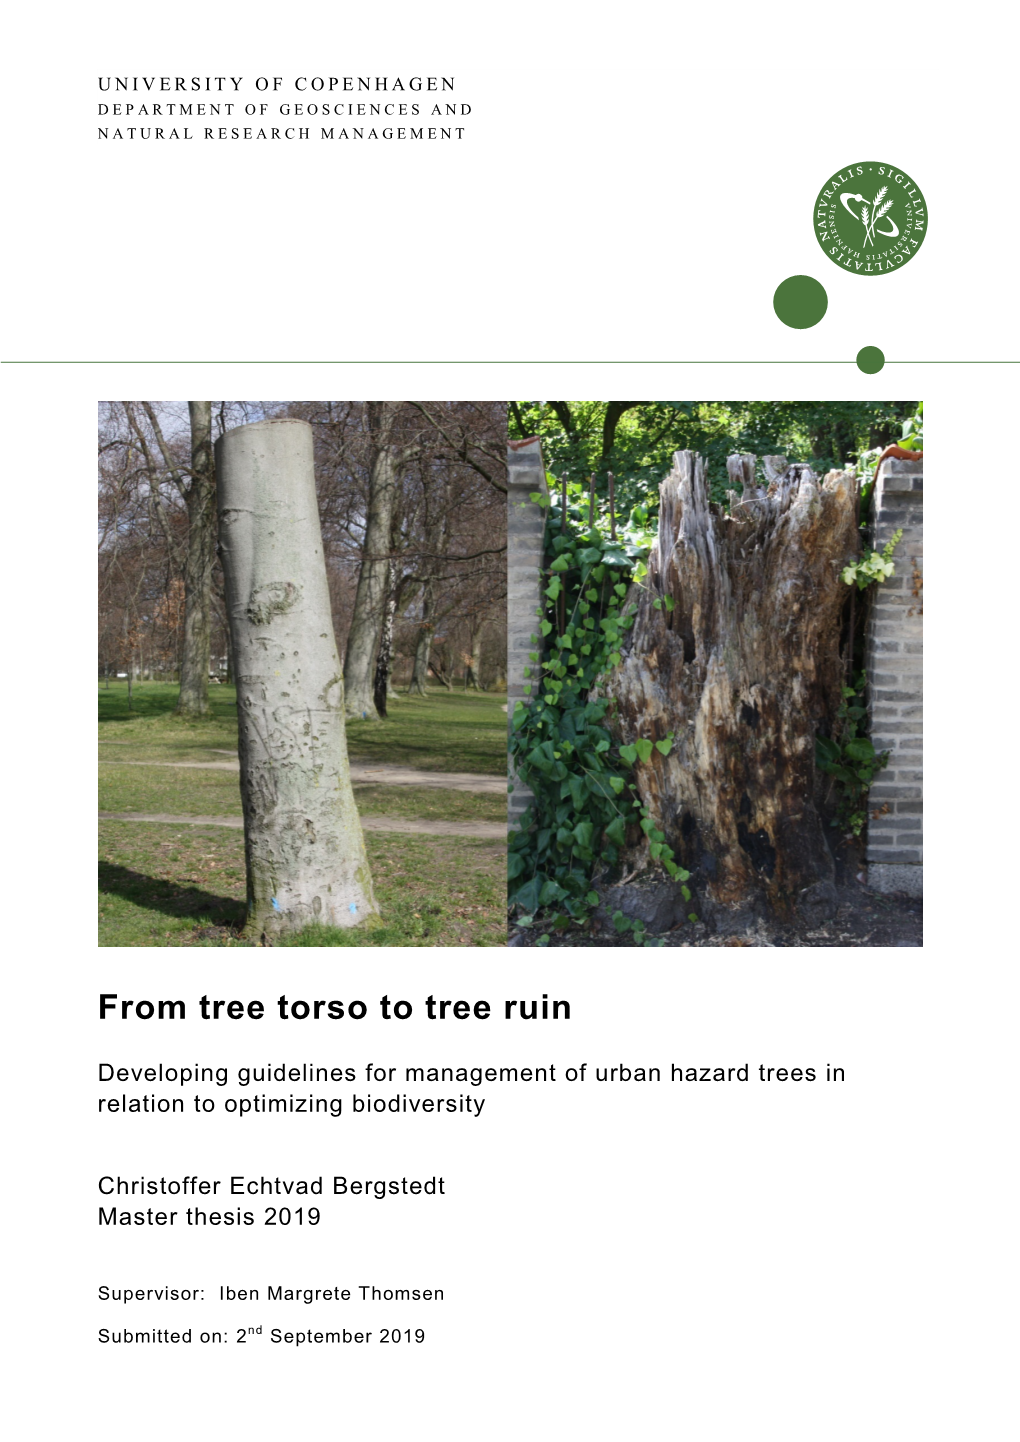 From Tree Torso to Tree Ruin